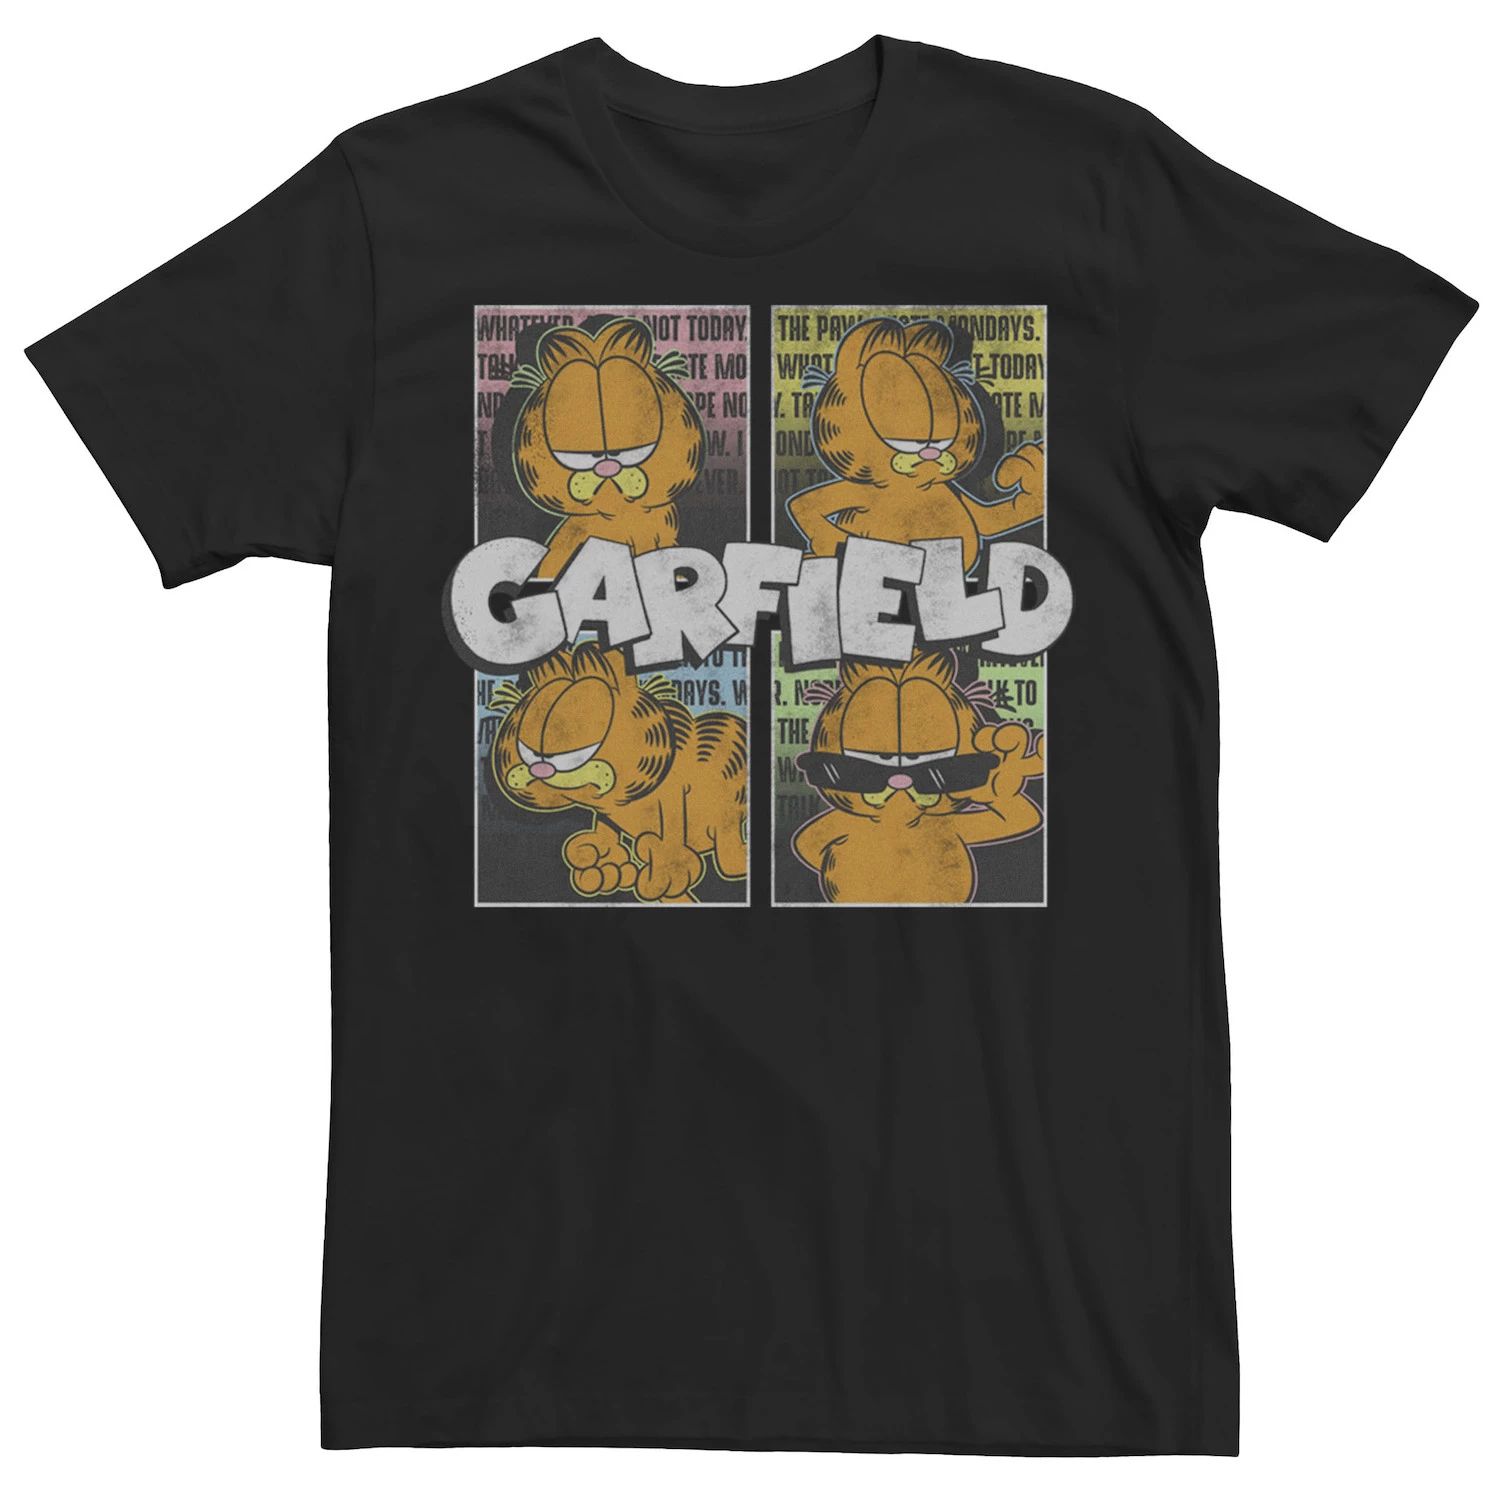 Мужская футболка Garfield Four Square с логотипом Garfield Licensed Character